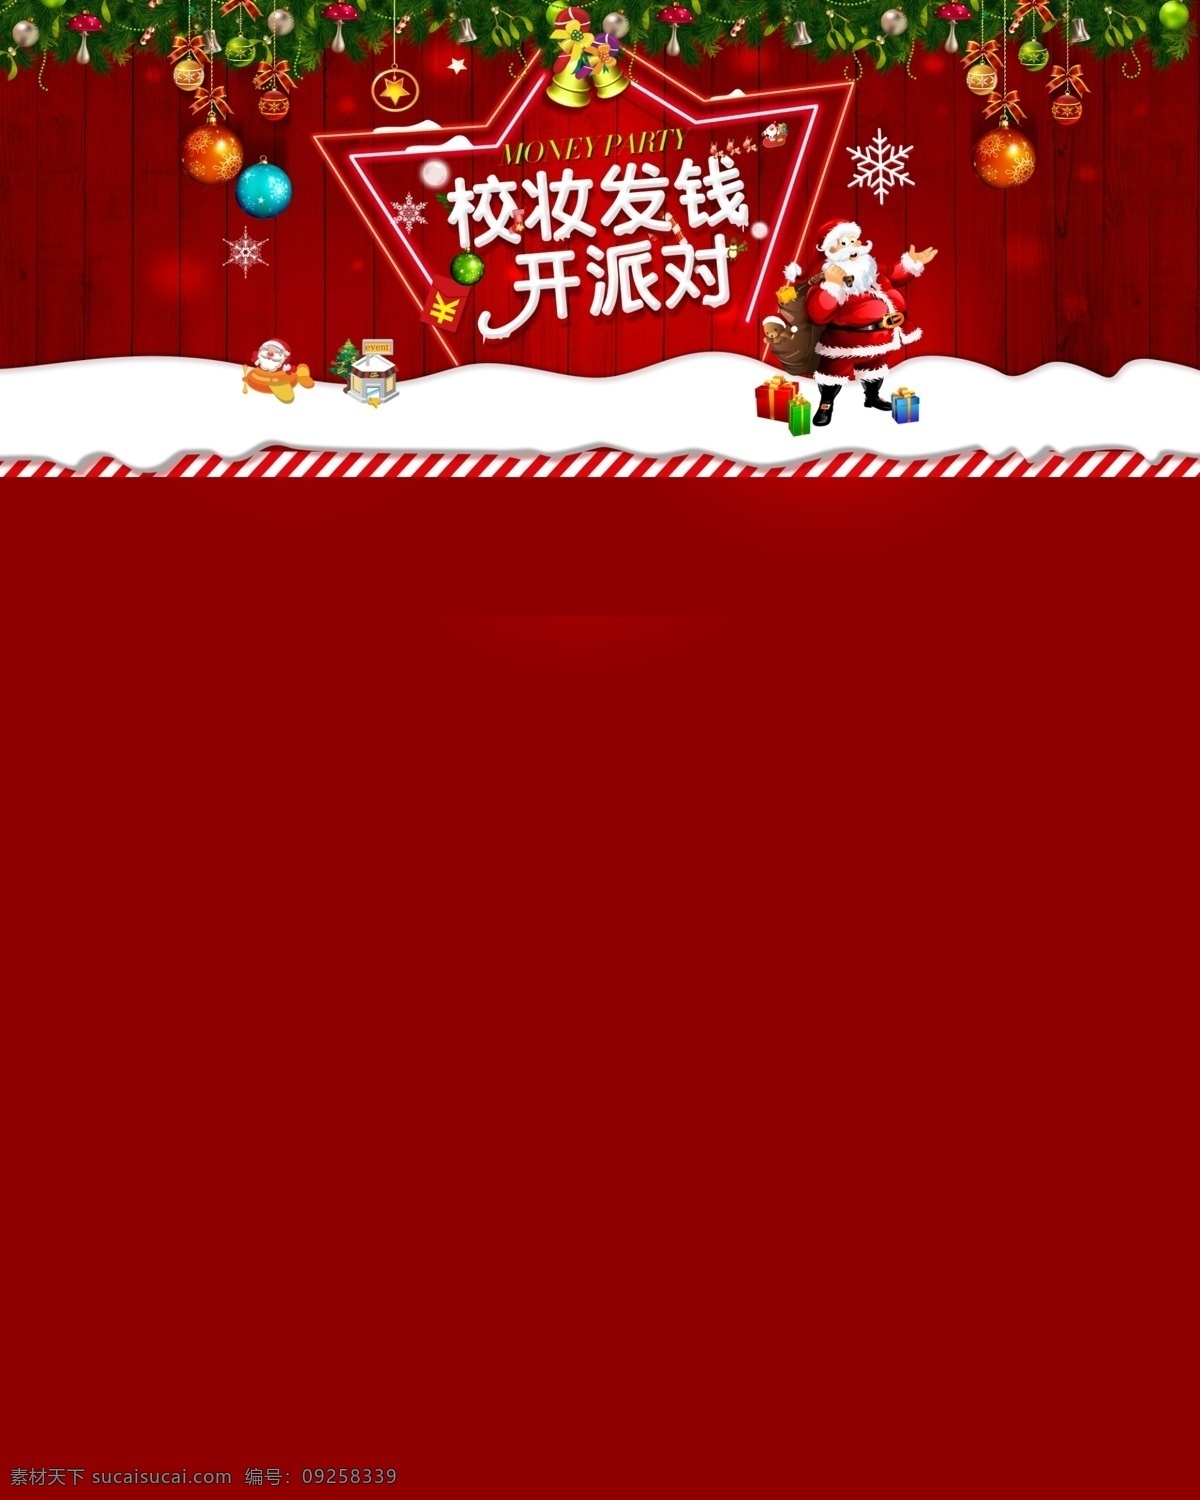 圣诞 派对 banner 图 广告图 圣诞派对 网页设计 活动页设计 原创设计 原创网页设计